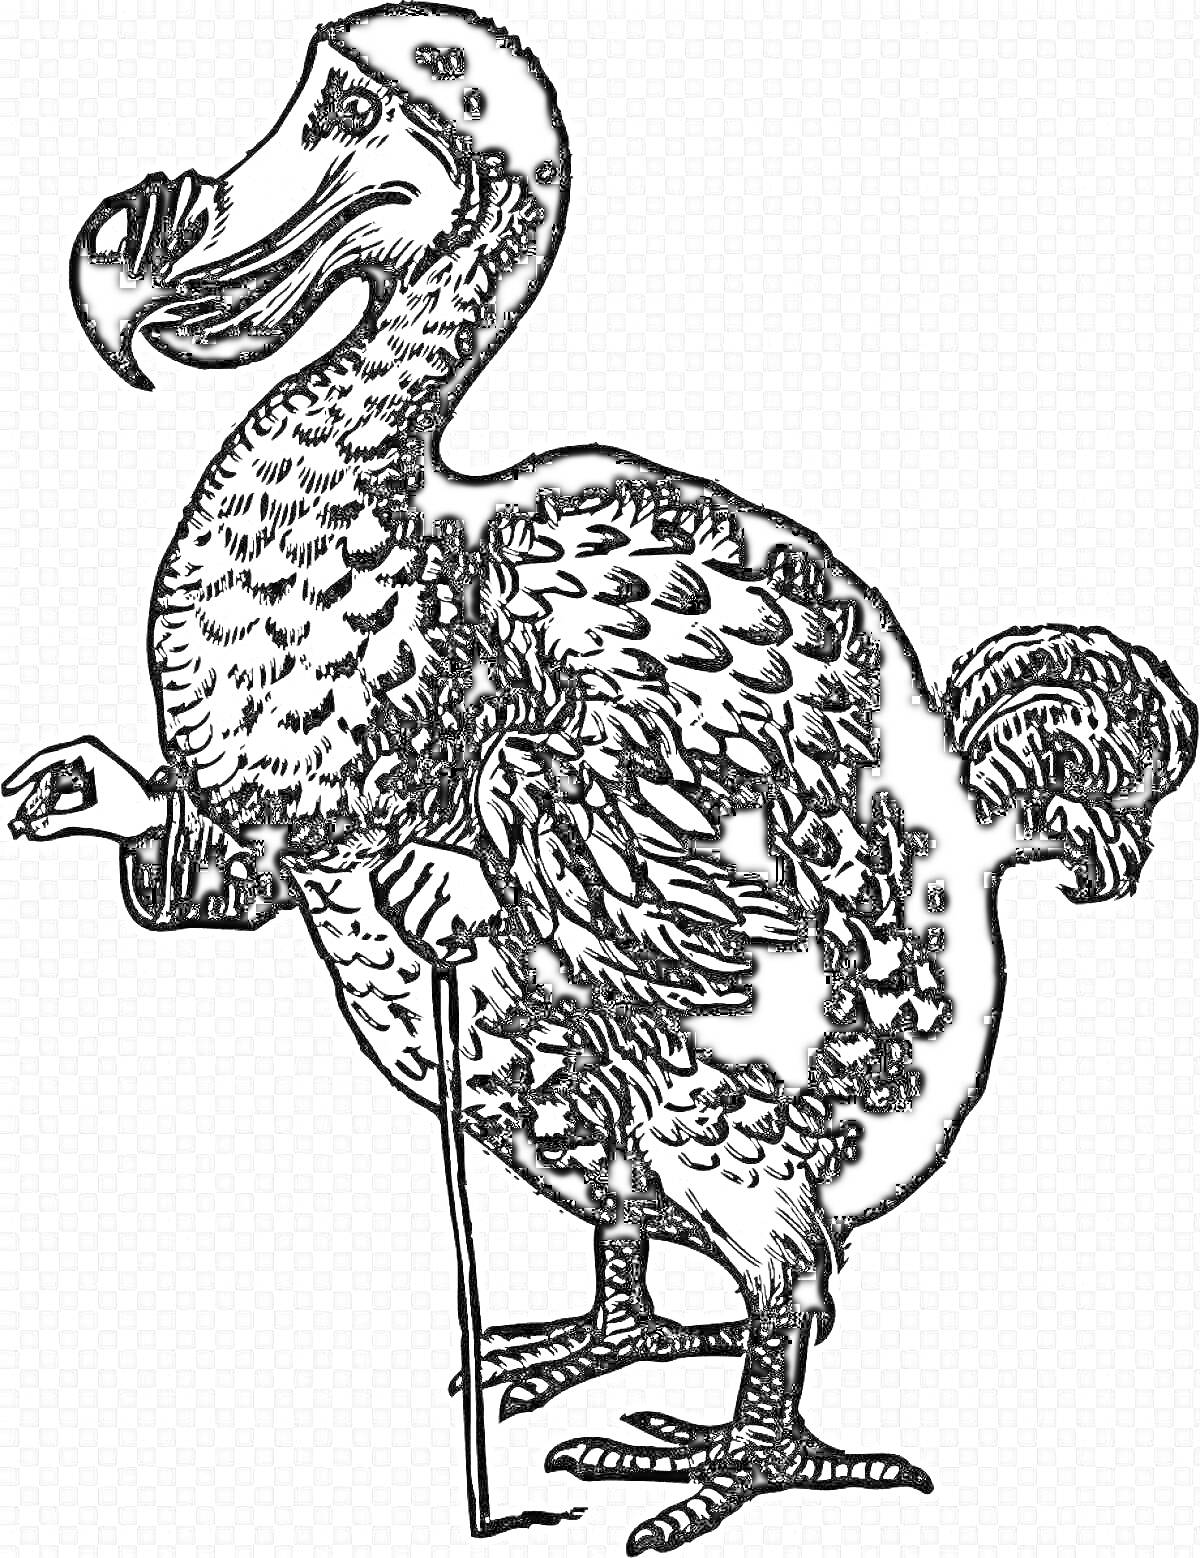 Додо птица с клювом и перьями, стоящая на двух ногах